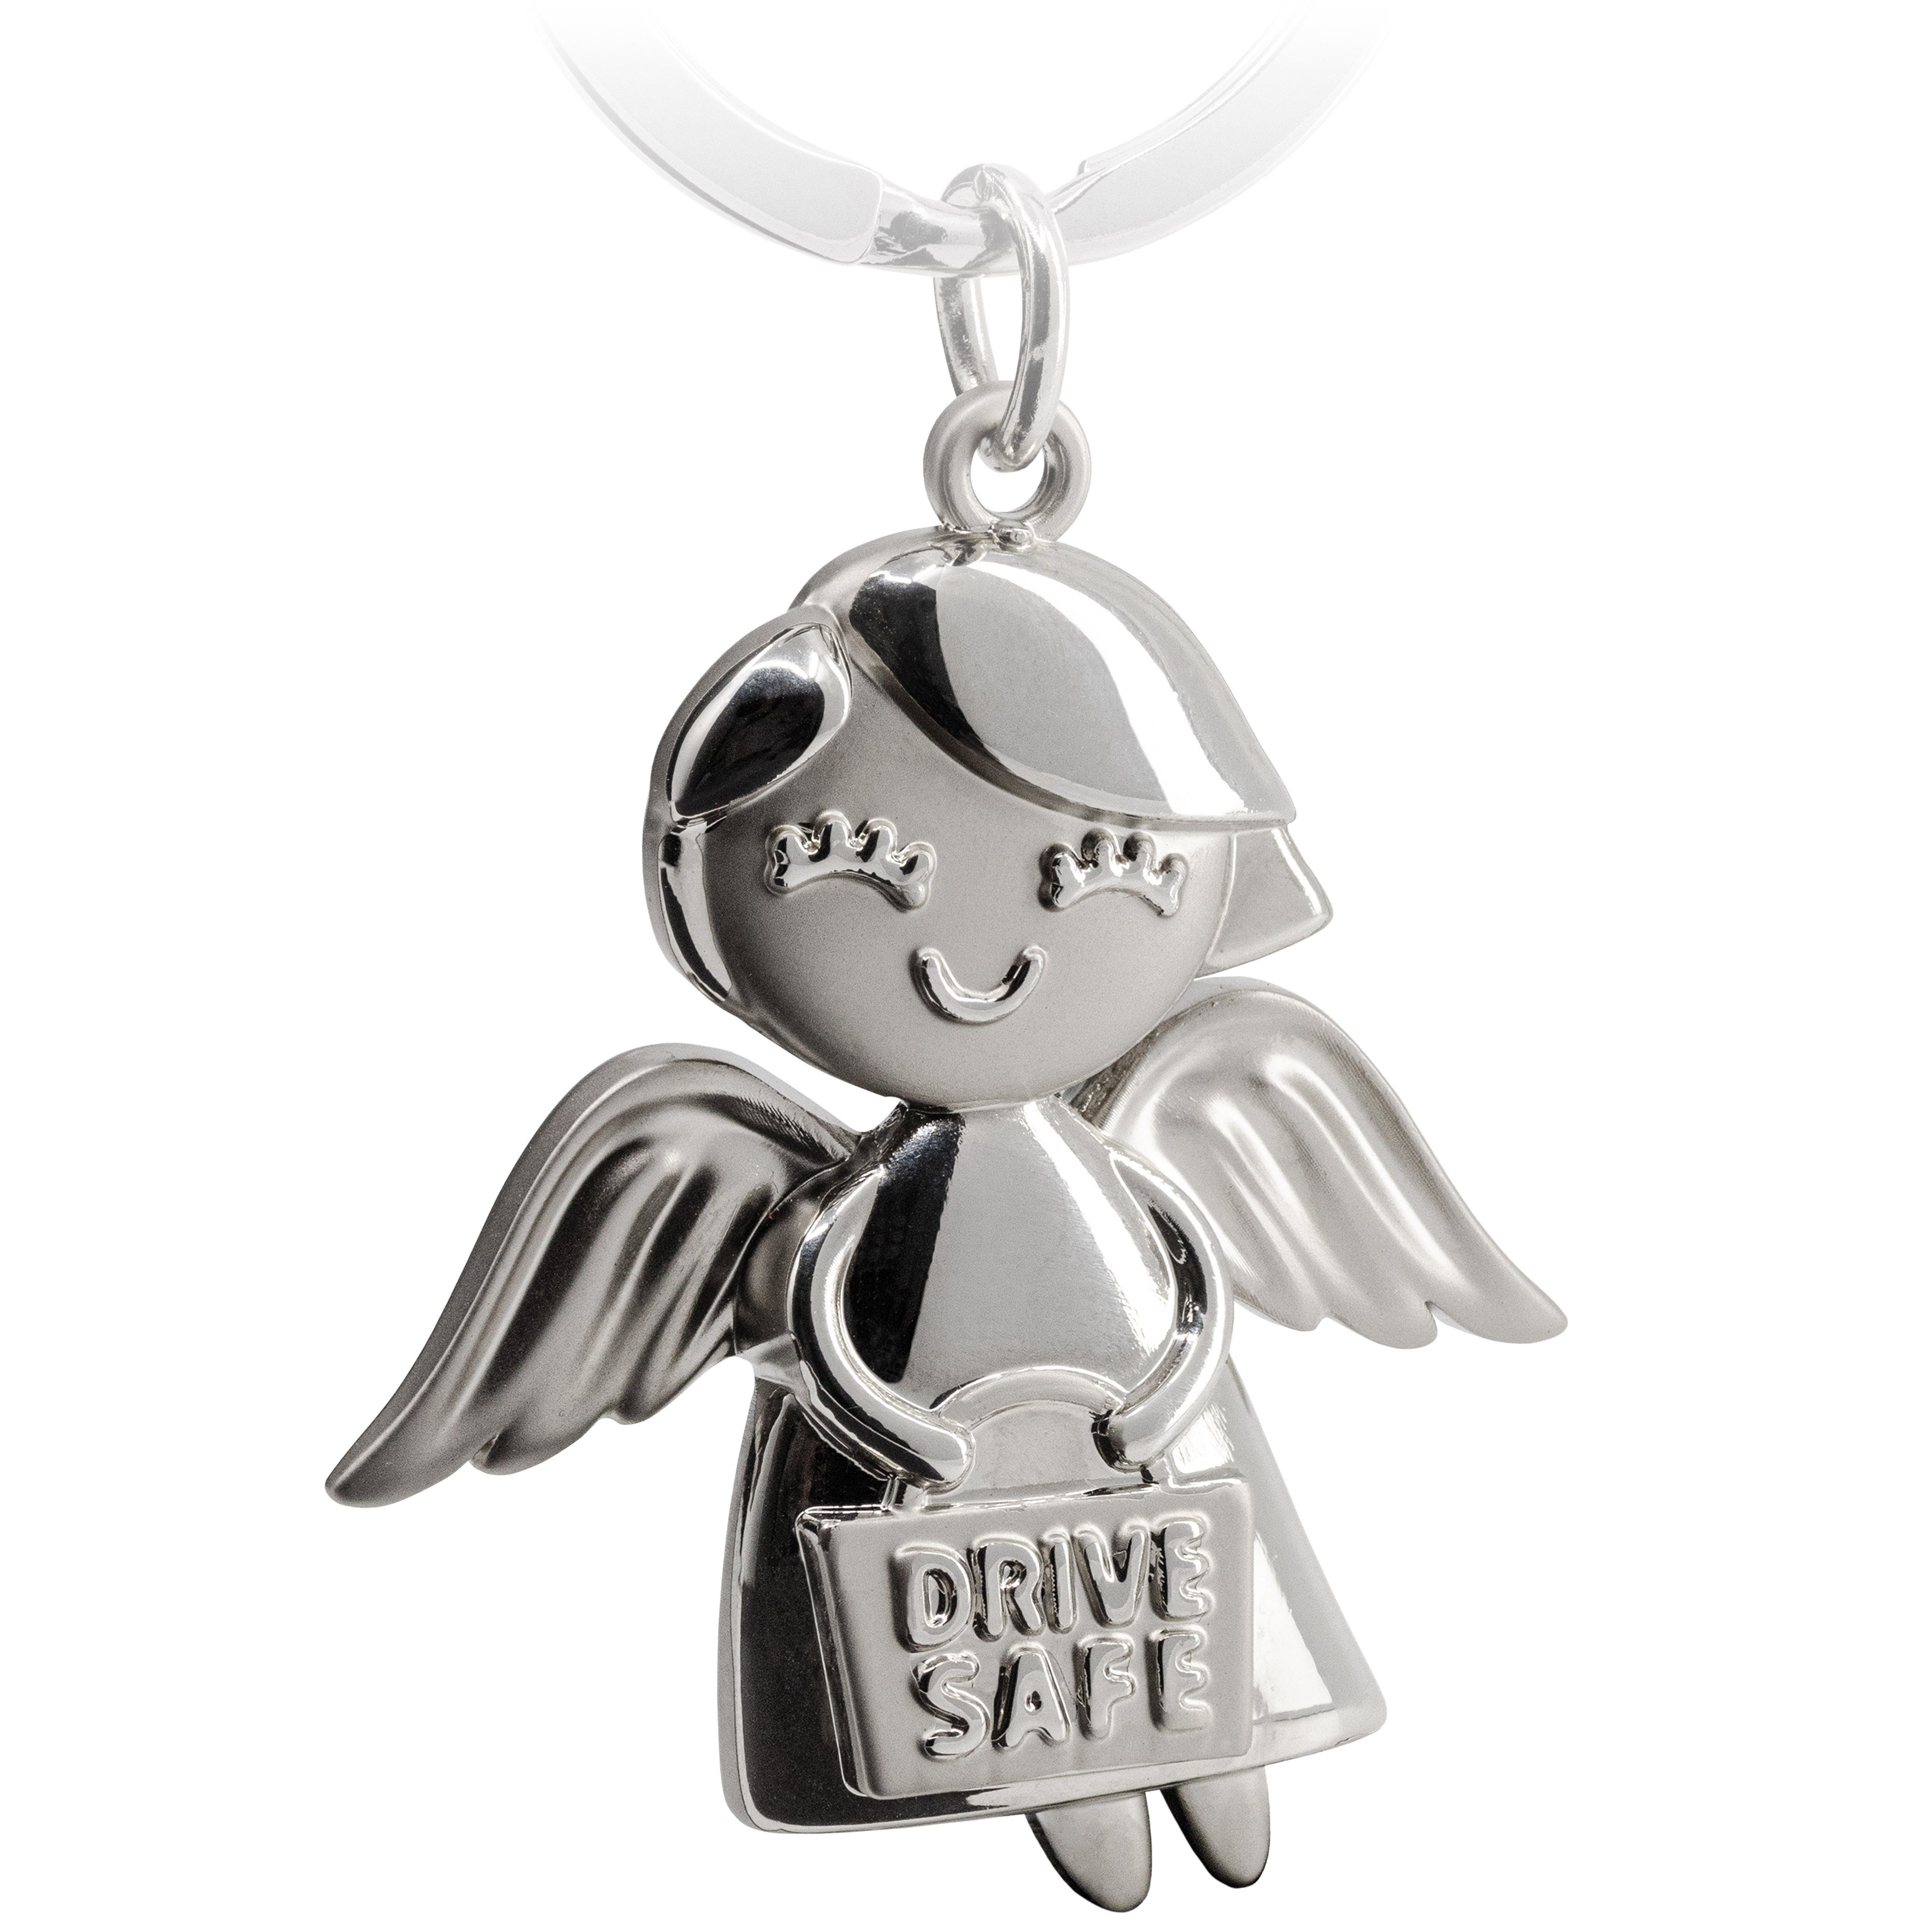 FABACH Schlüsselanhänger Schutzengel Emmy - Gravur Drive Safe - Fahr vorsichtig Glücksbringer Silber